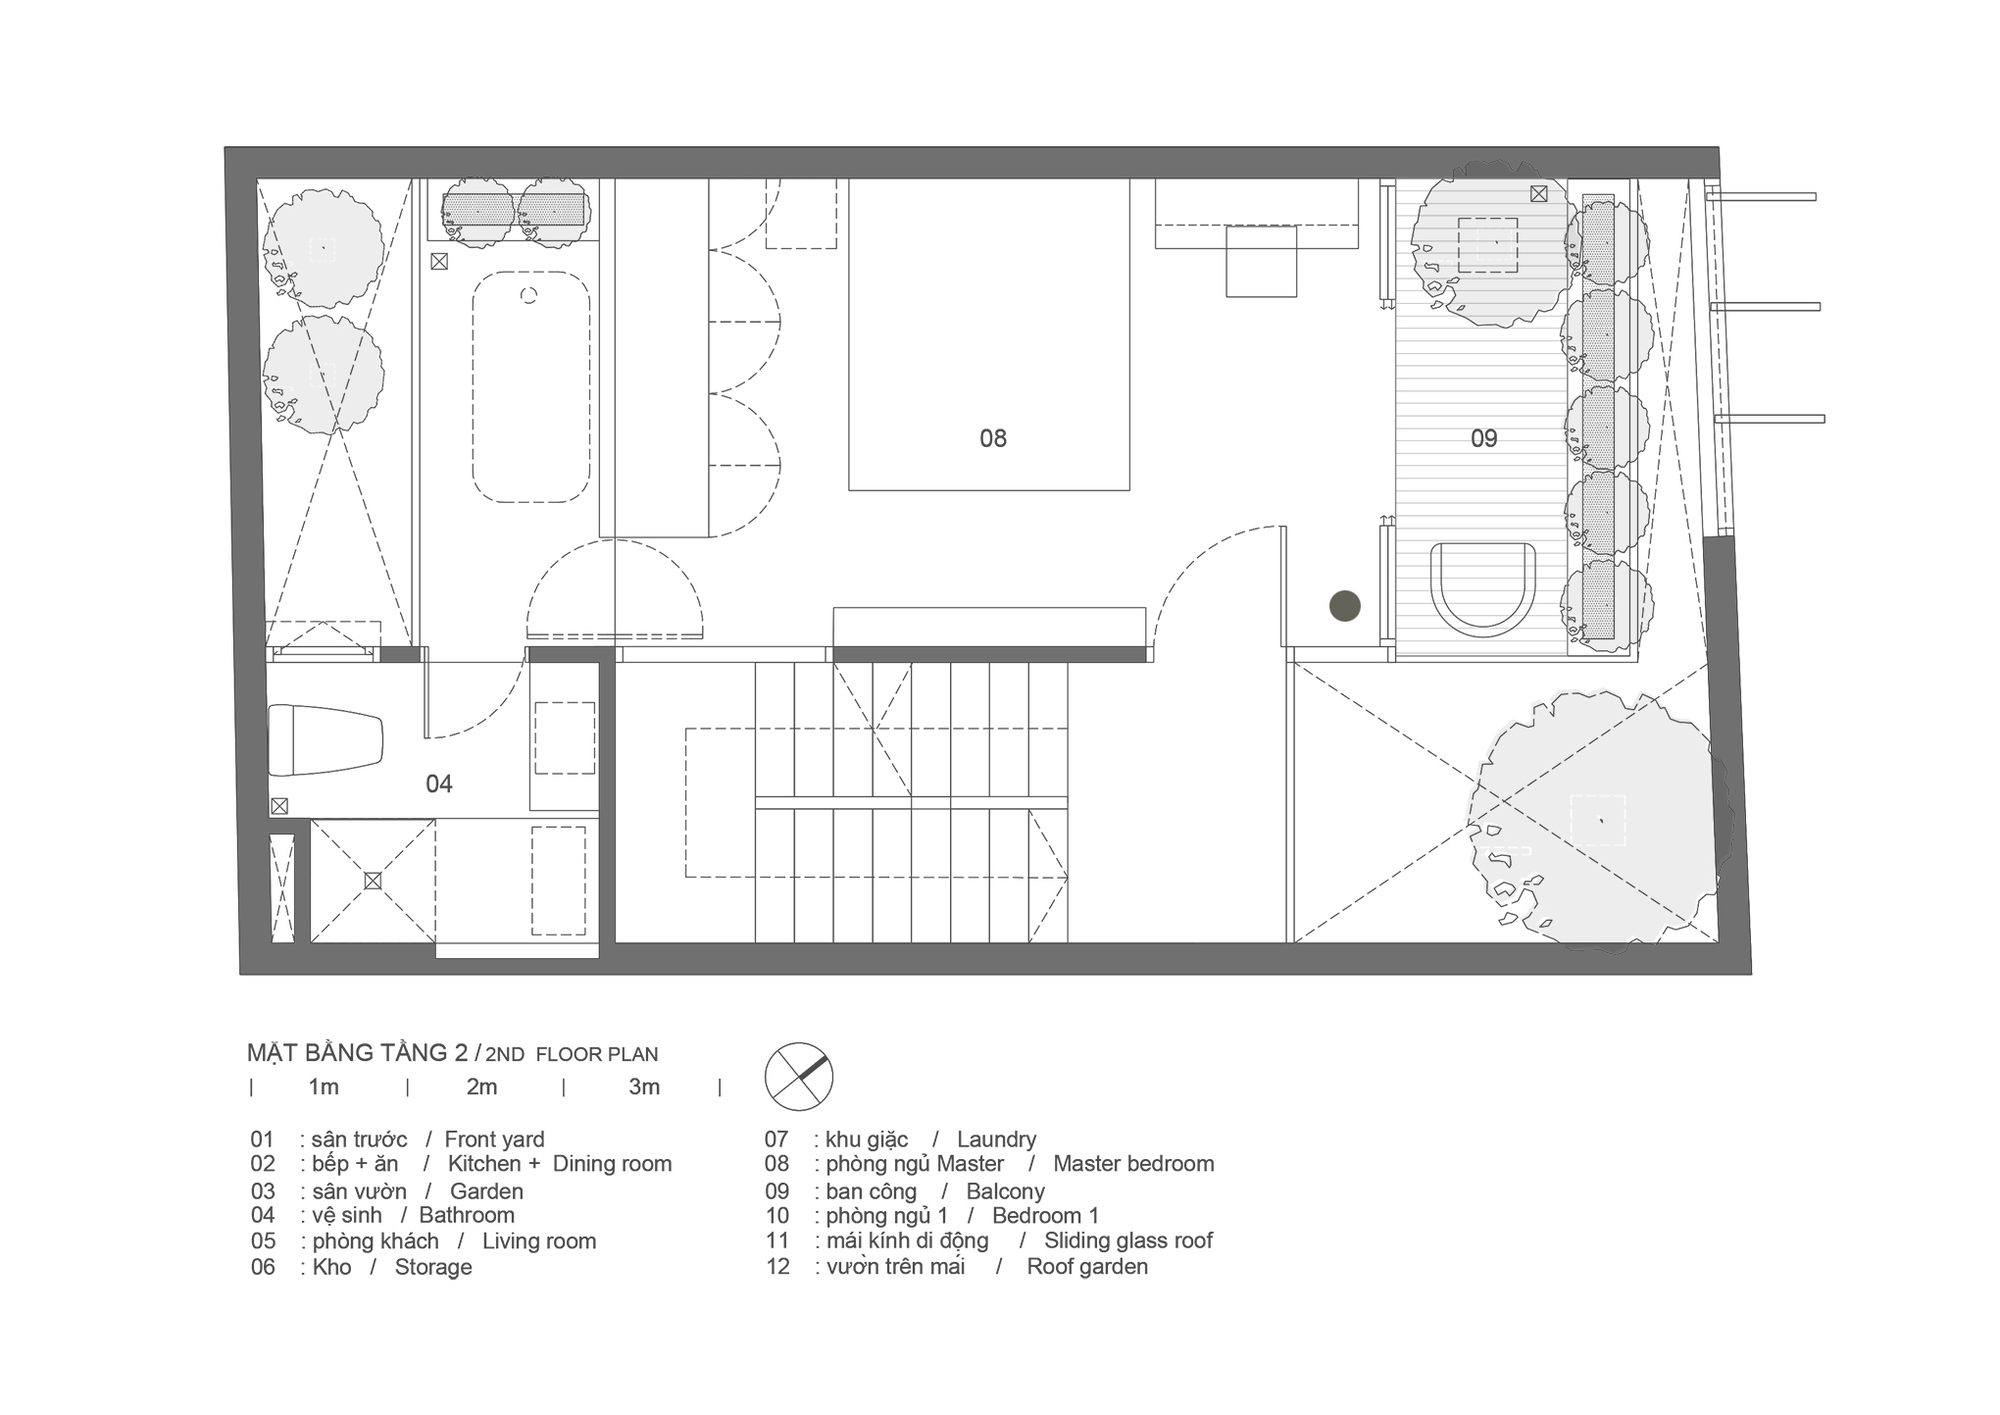 图片[4]|Bi & Sam 之家 / T H I A Architecture|ART-Arrakis | 建筑室内设计的创新与灵感